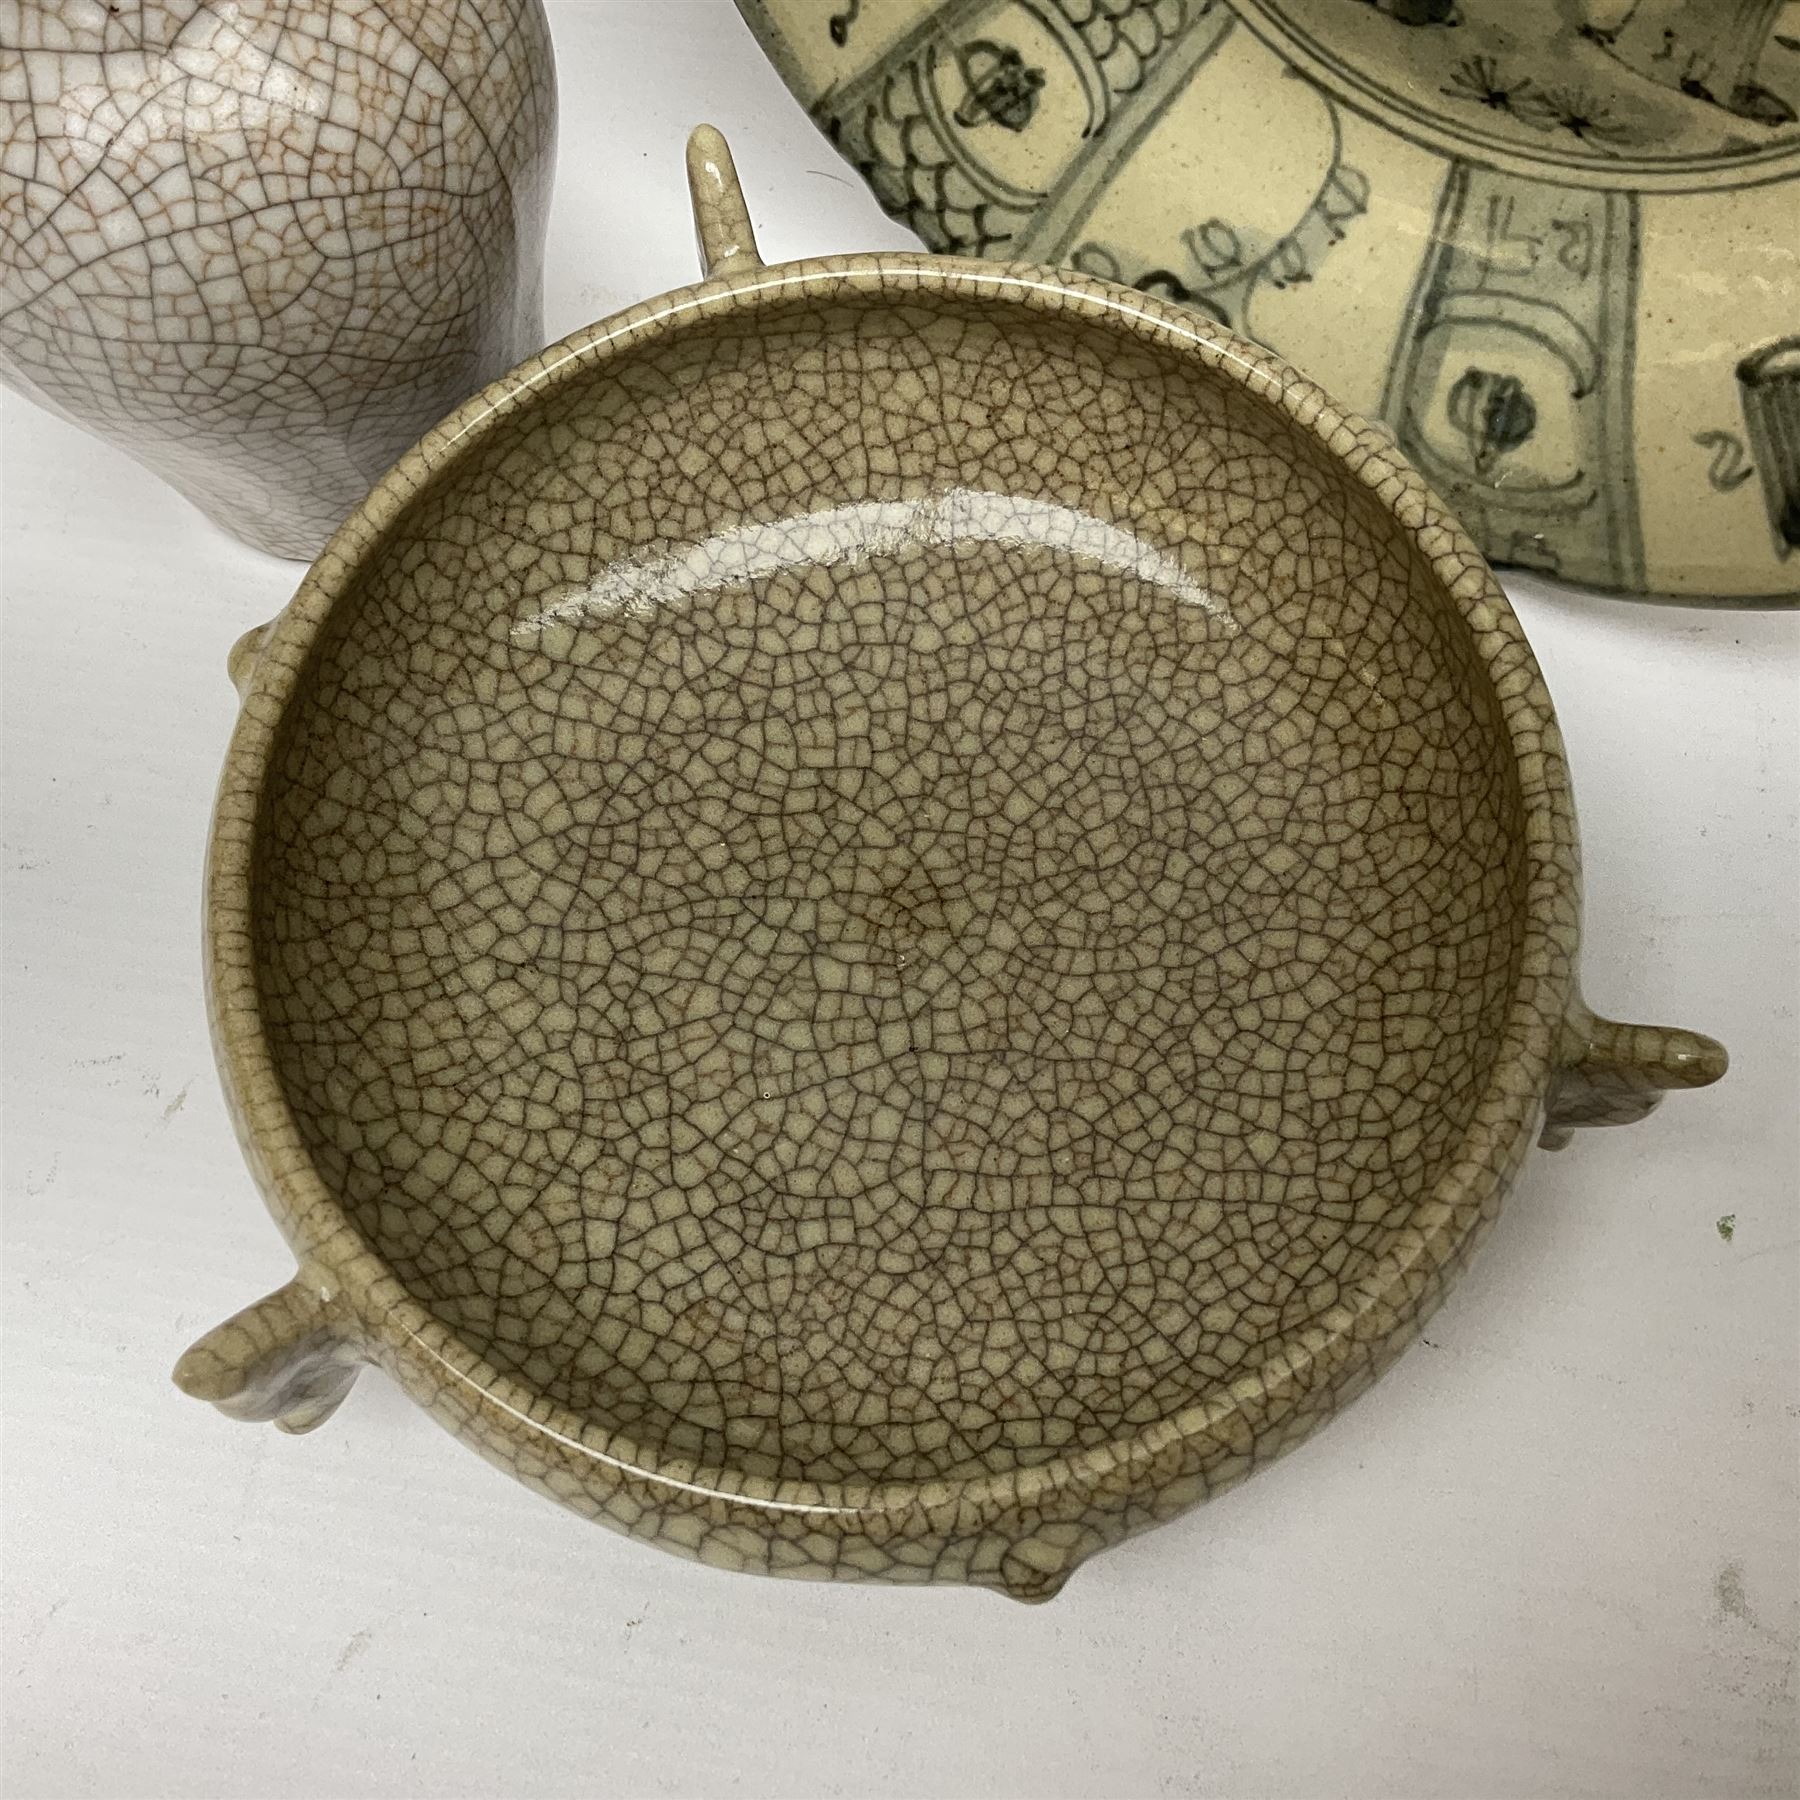 Chinese Ge-type crackle glazed vase and matching dish - Image 3 of 10